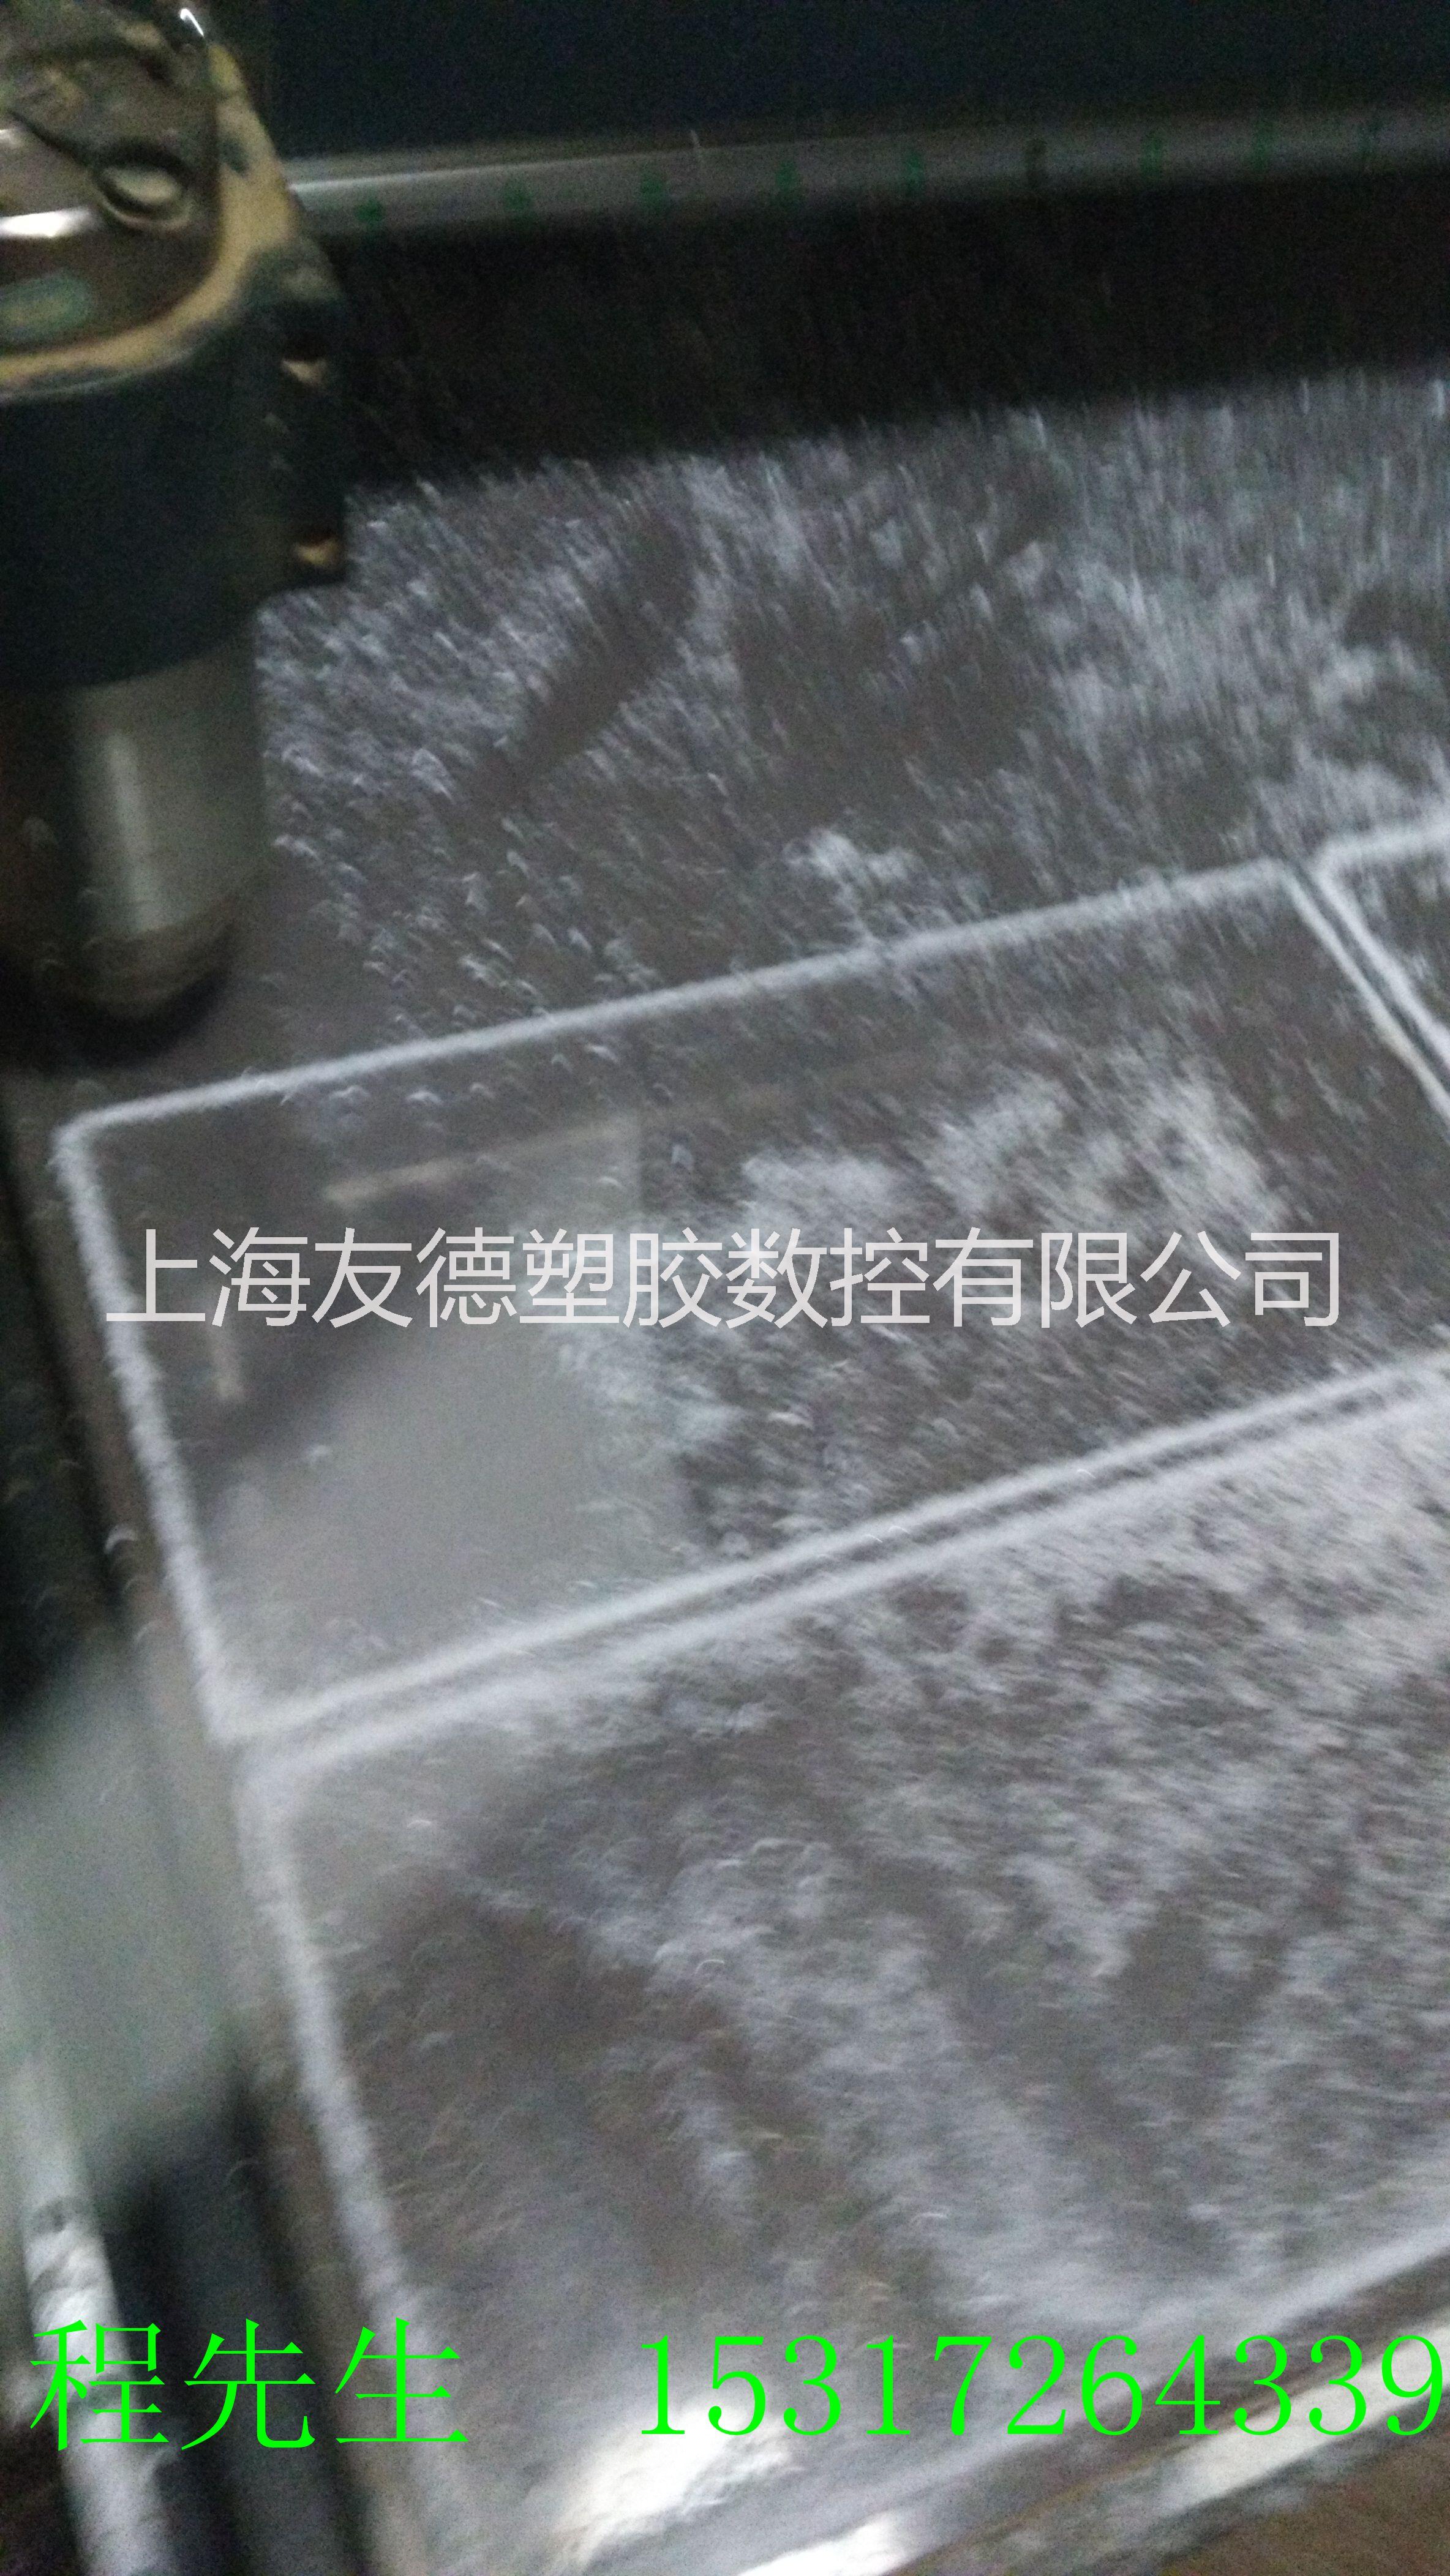 上海亚克力加工@上海亚克力切割@上海有机玻璃加工